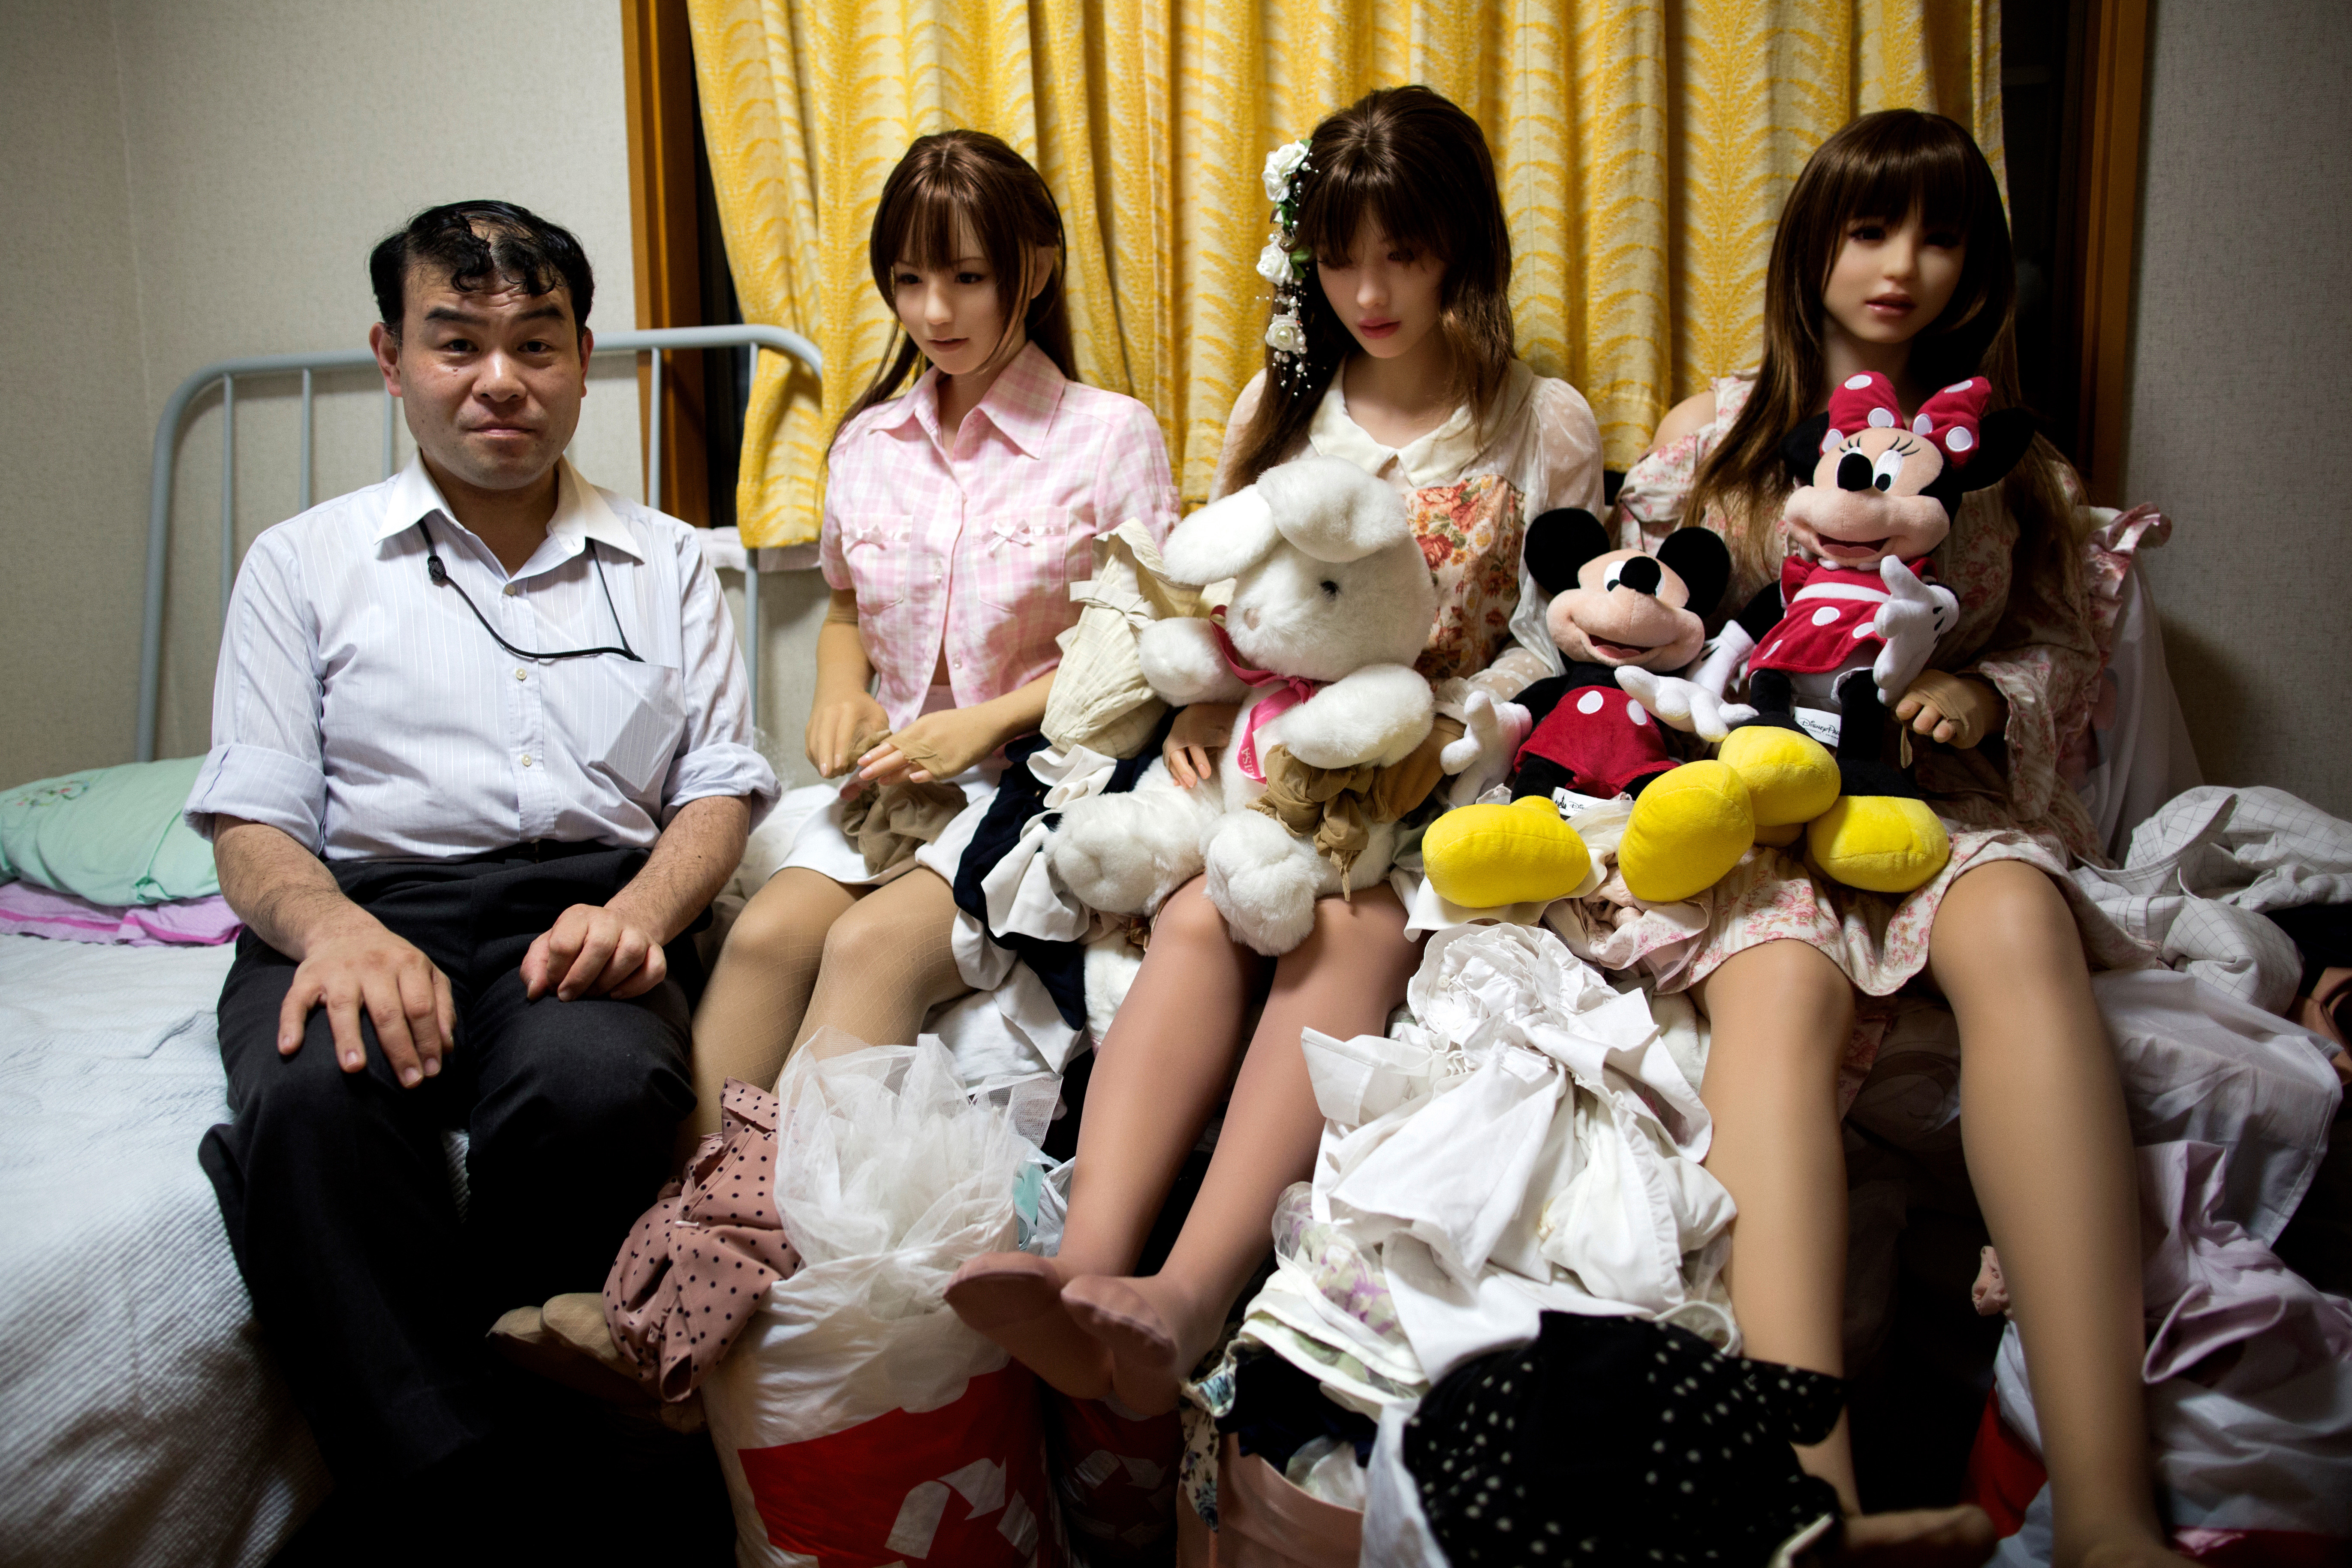 Резиновые женщины для мужчин. Эндзе Косай. Резиновая кукла. Японские куклы для мужчин. Резиновая женщина.